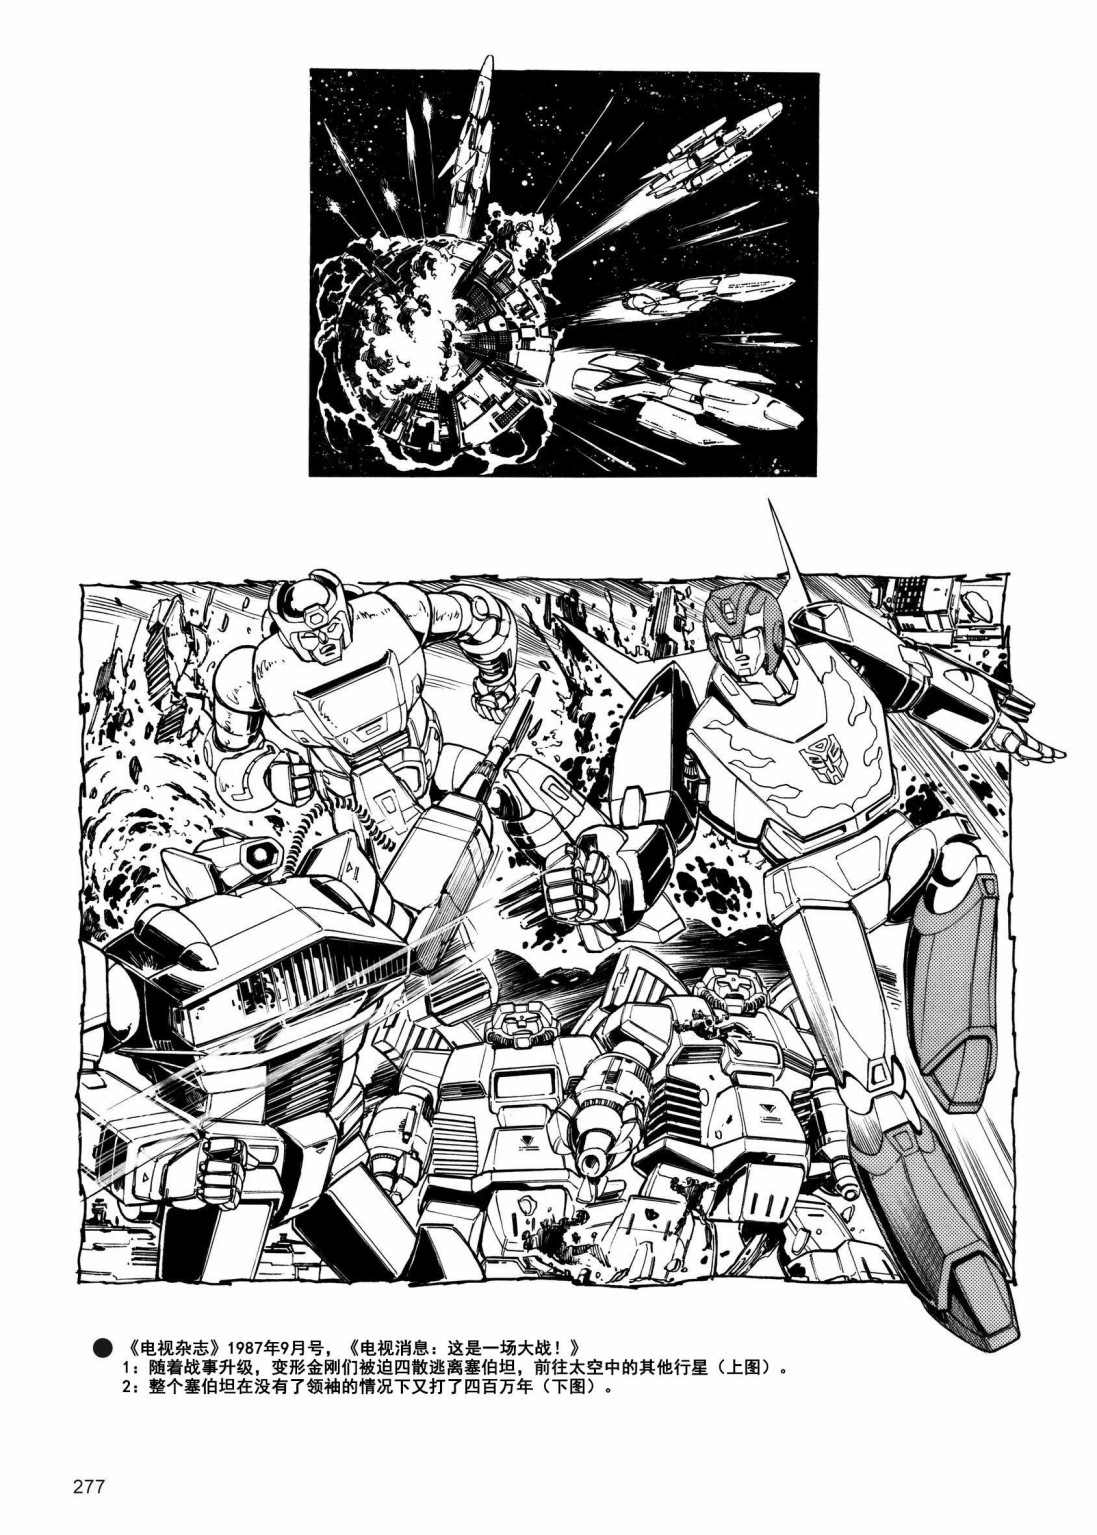 變形金剛日版G1雜誌插畫 - 變形金剛：頭領戰士 - 2